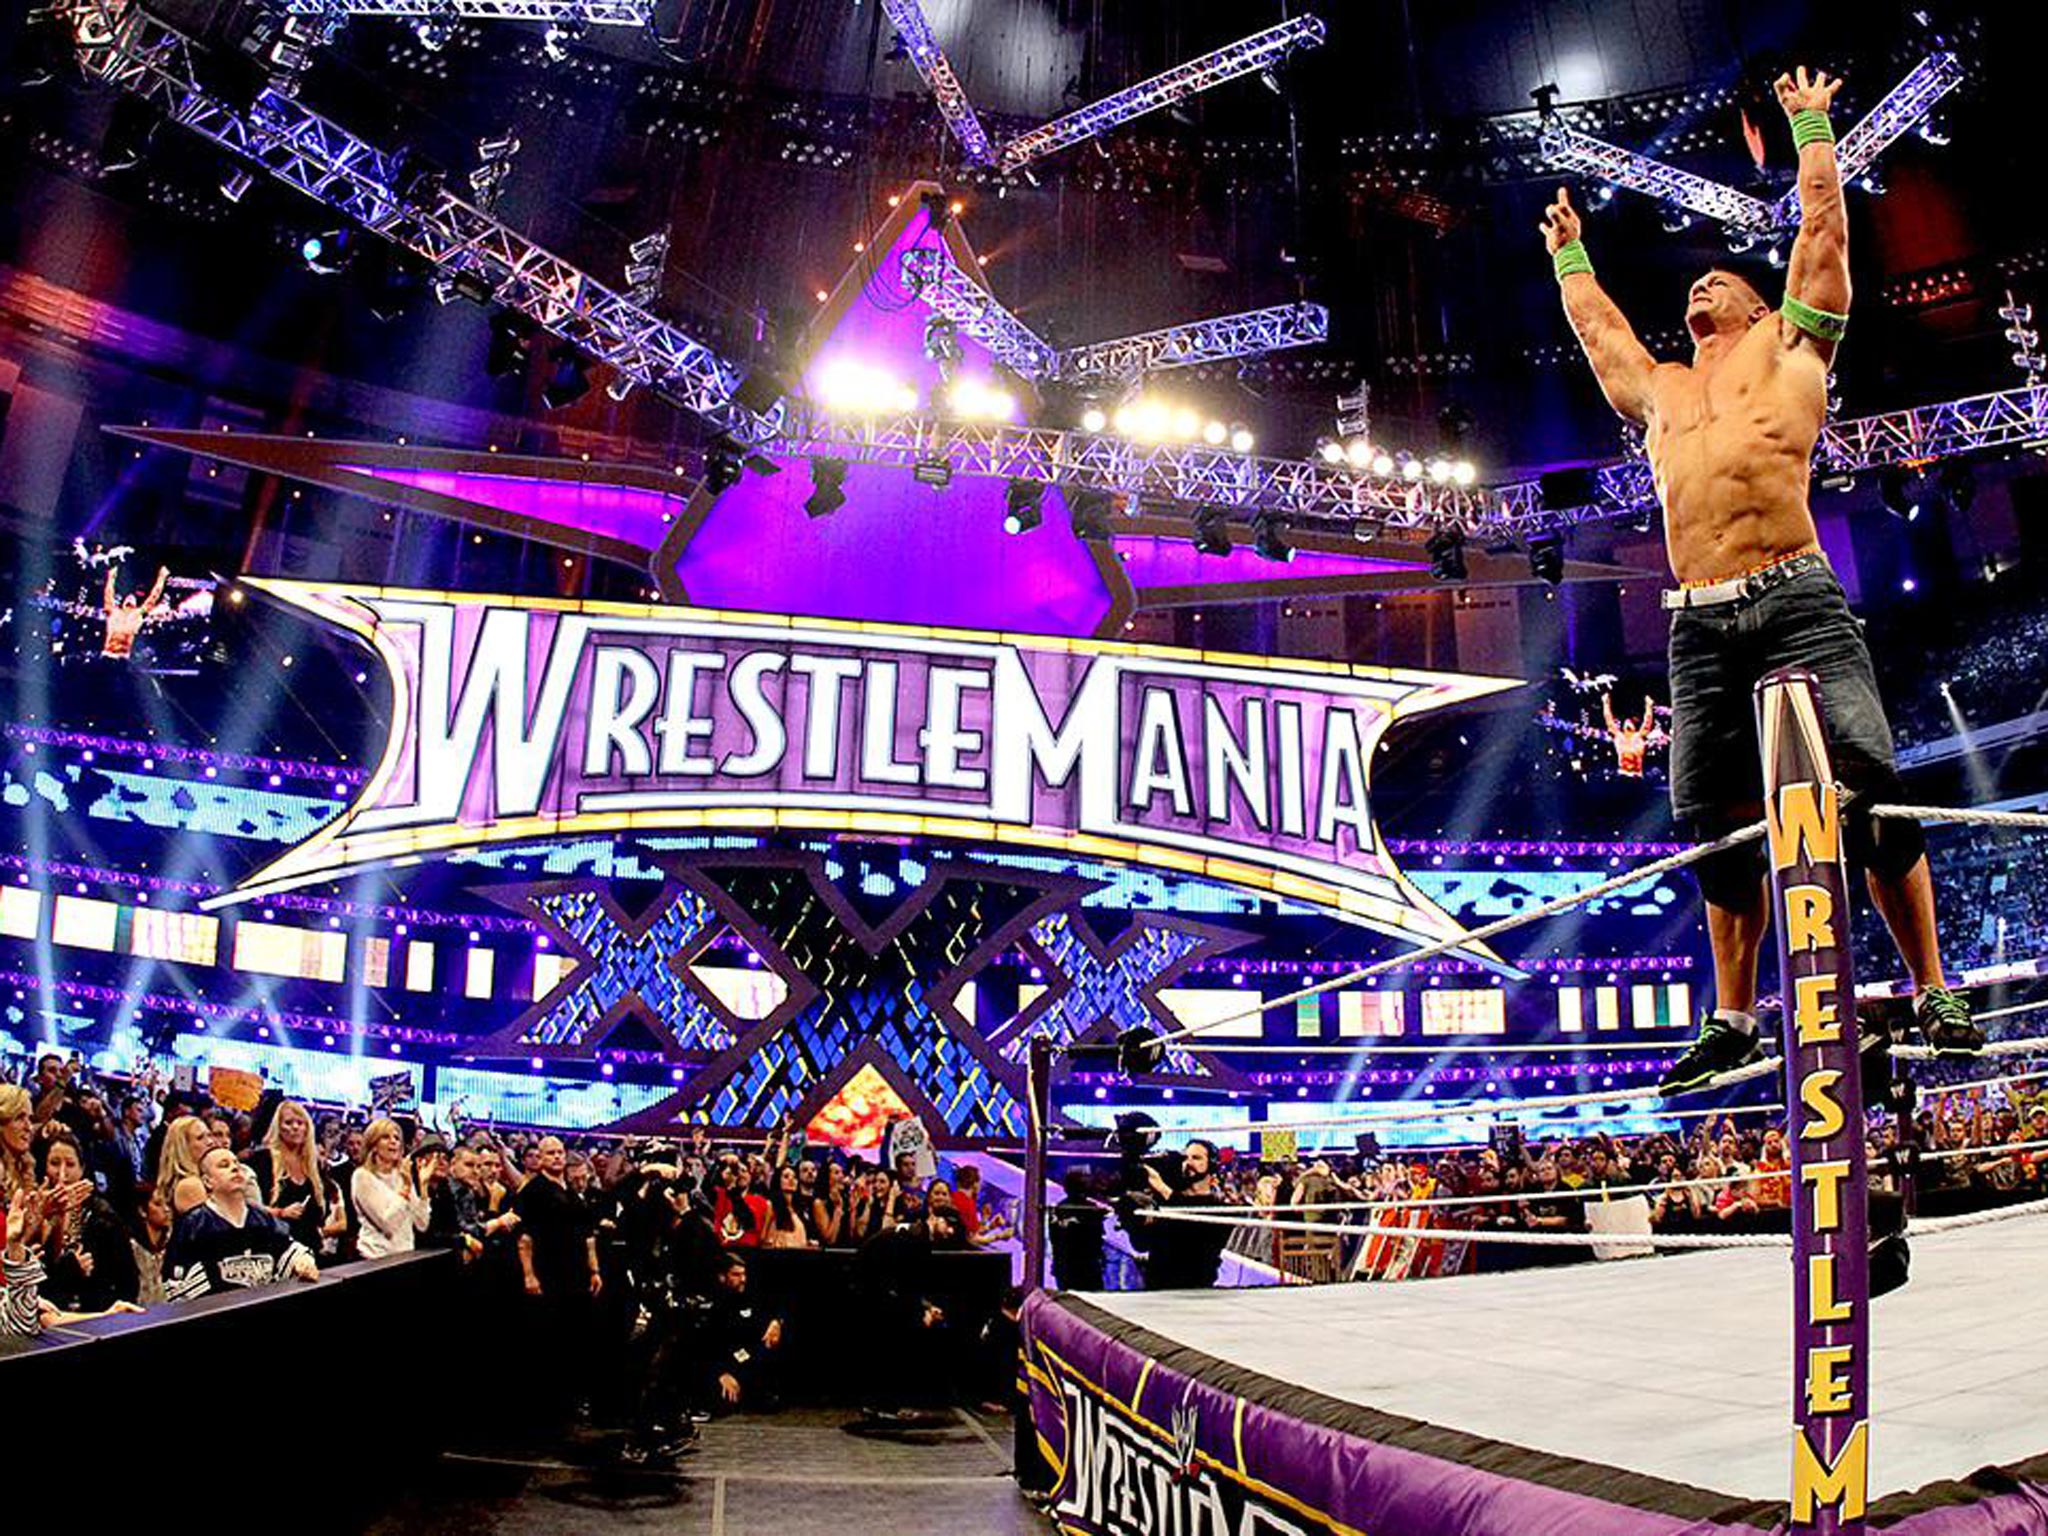 Comic Con Delhi 2016: Enter a virtual WWE ring as John Cena, Roman Reigns  or Kane! - IBTimes India